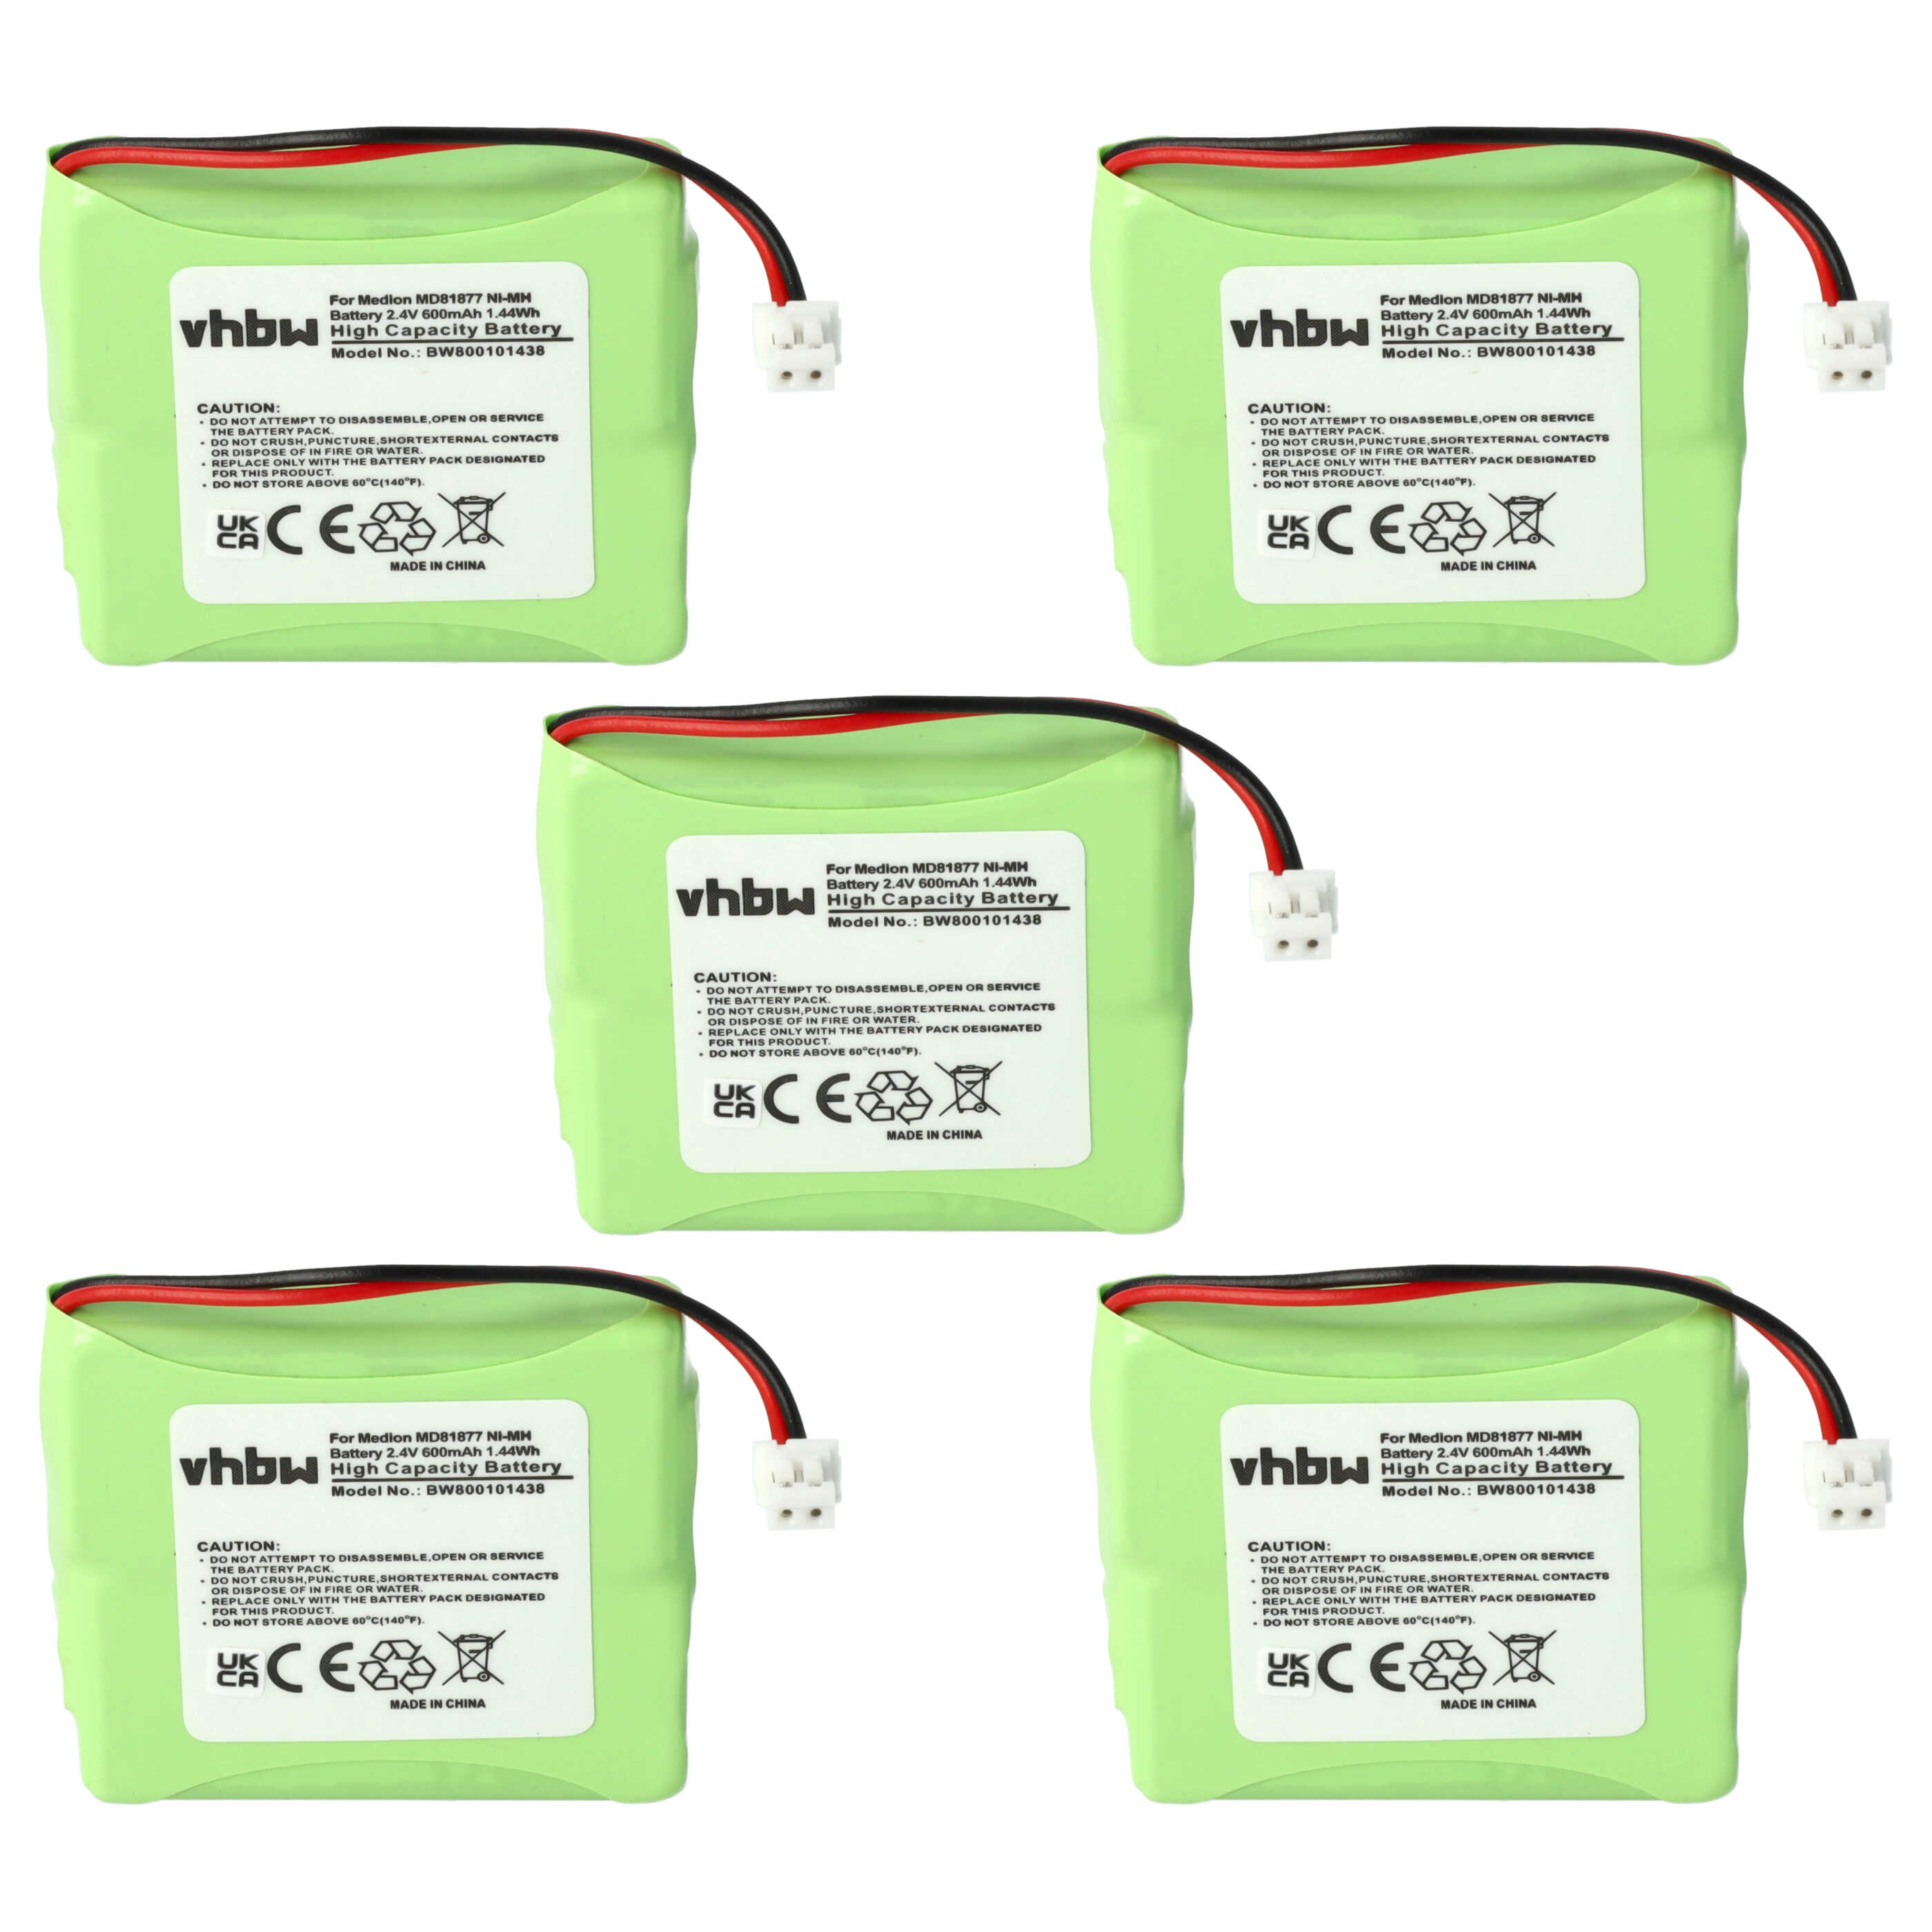 Batteries (5x pièces) remplace GP0827, 5M702BMX, GP0748, GP0747, GP0735 pour téléphone - 600mAh 2,4V NiMH